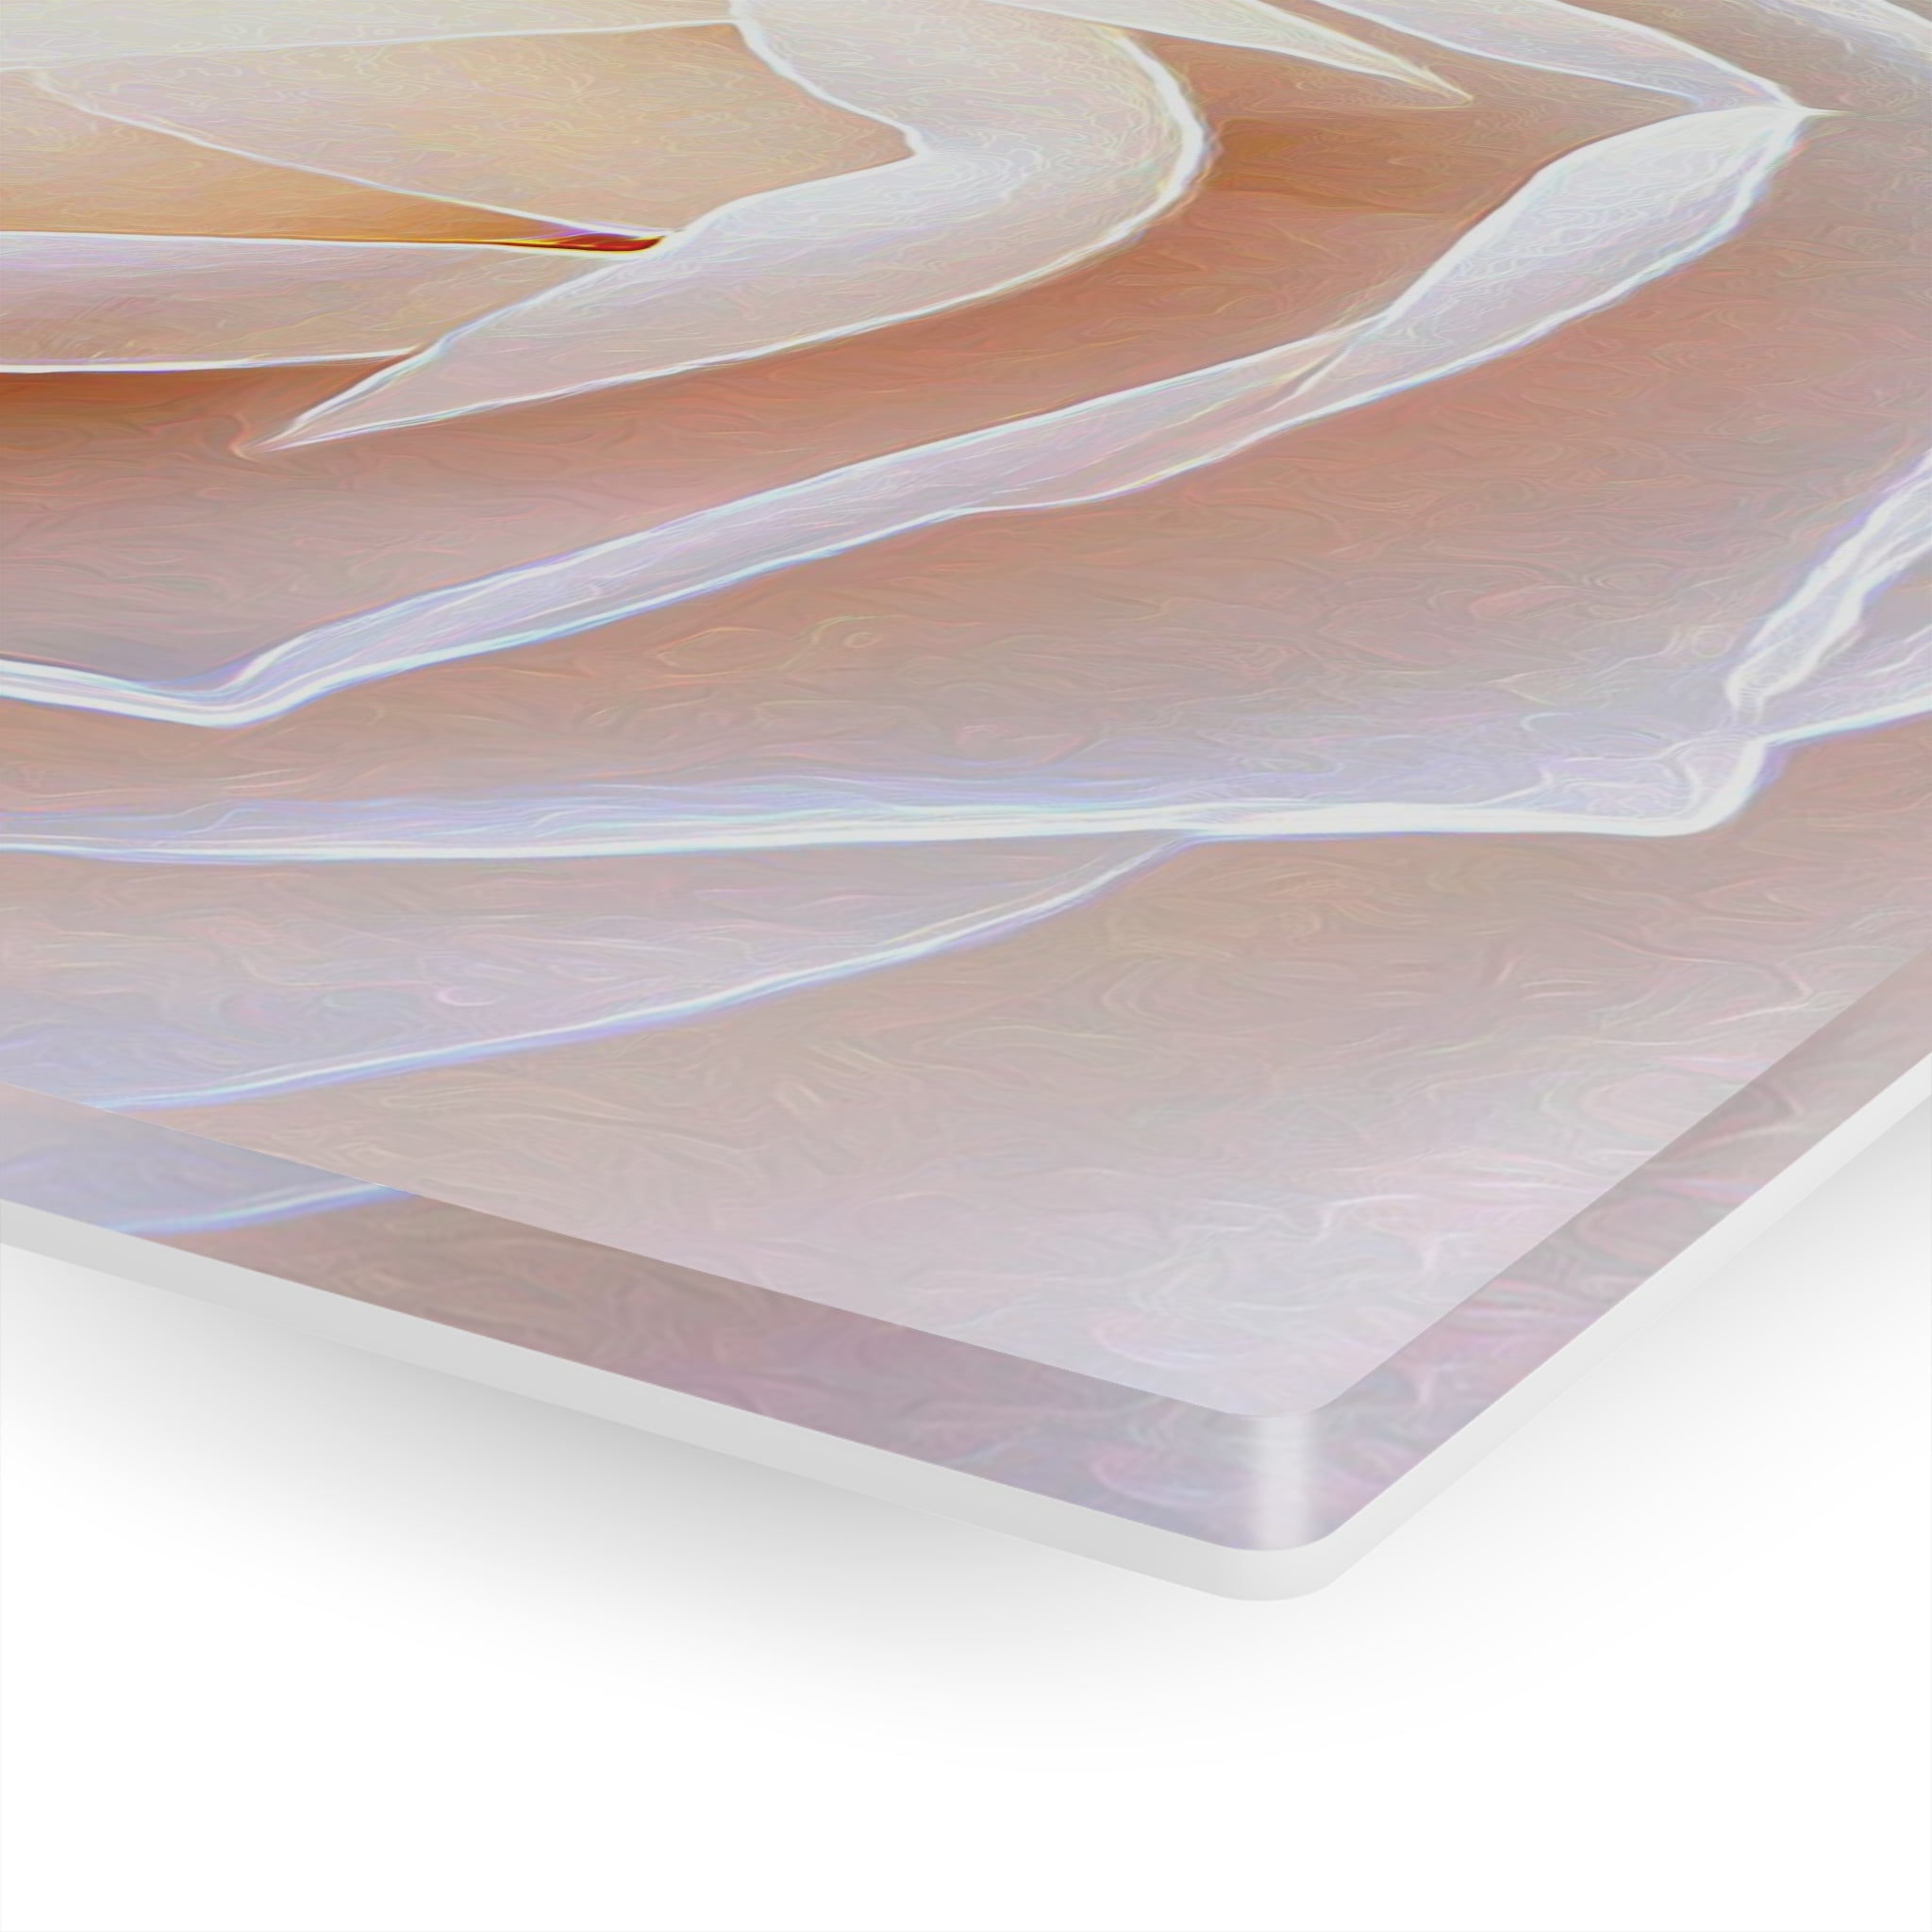 Rosy White Faits saillants Impression sur Verre Acrylique